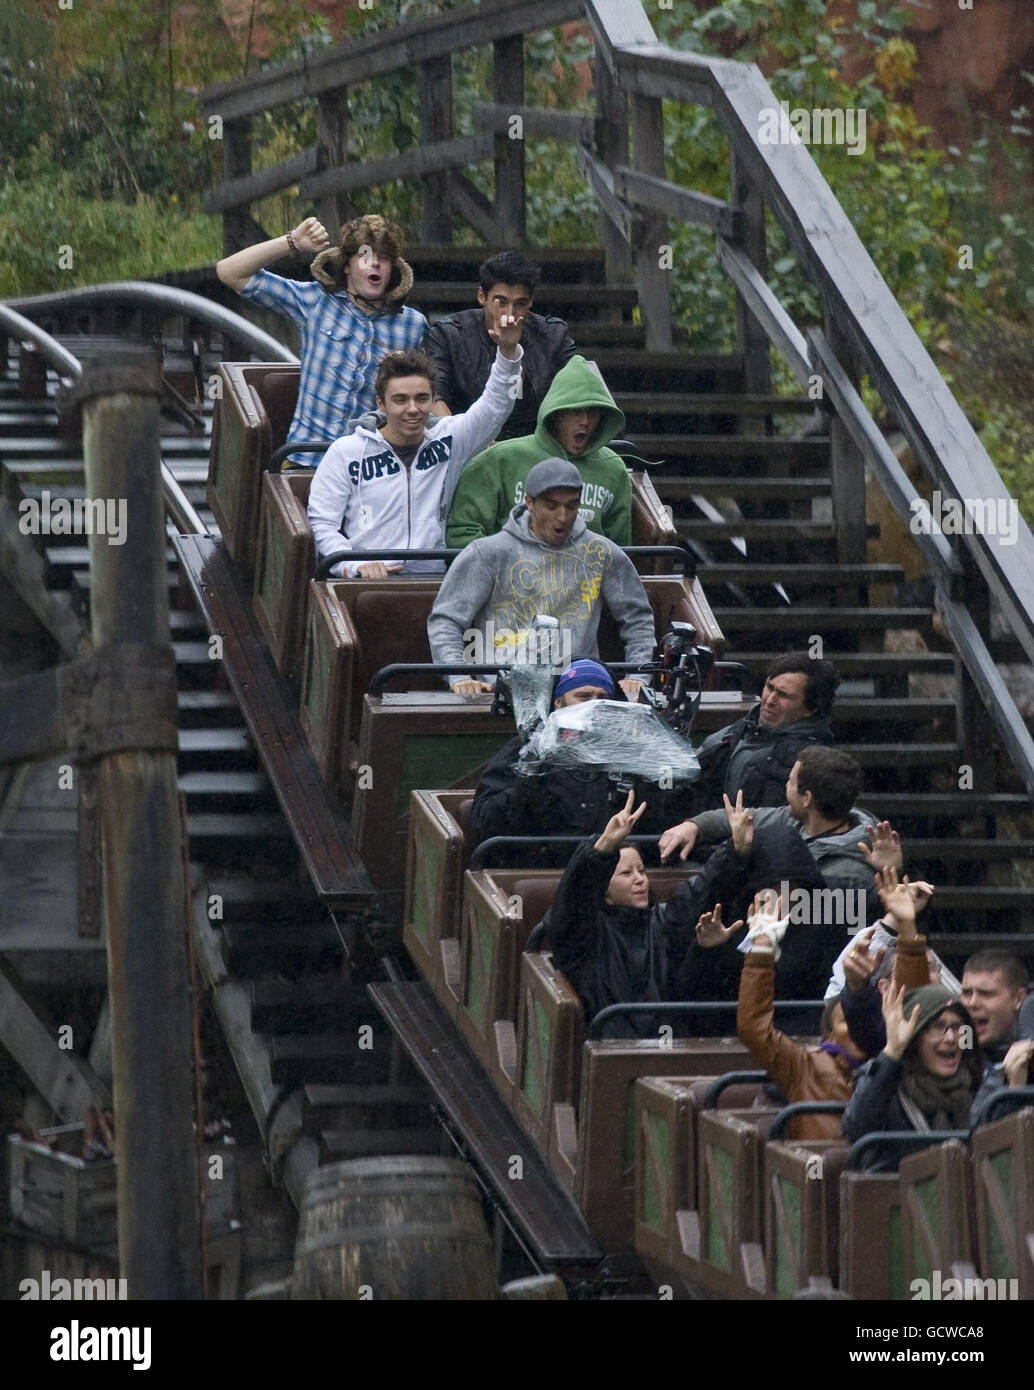 The Wanted durante una visita a Disneyland Paris in Francia. Foto Stock